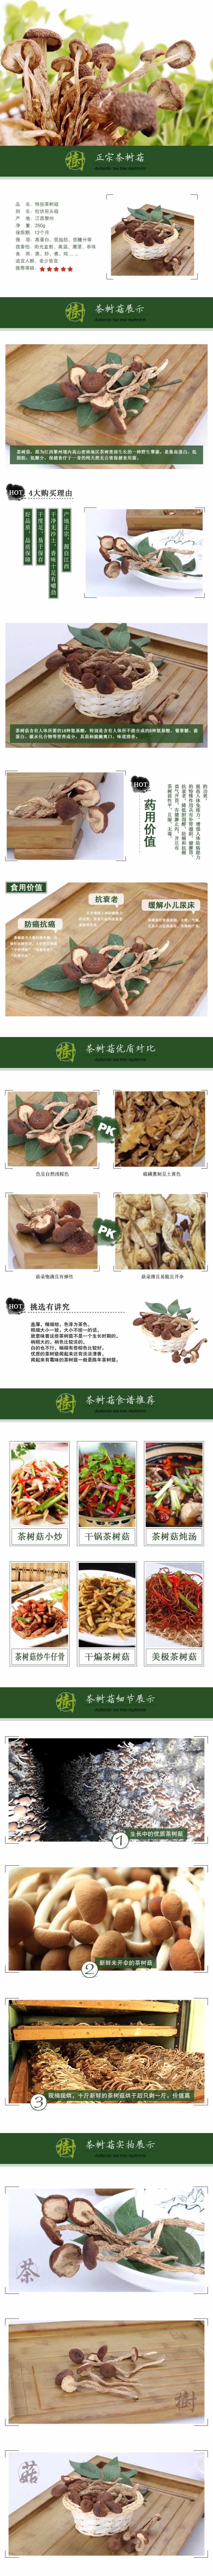 特技茶树菇柱状田头菇蘑菇山货描述